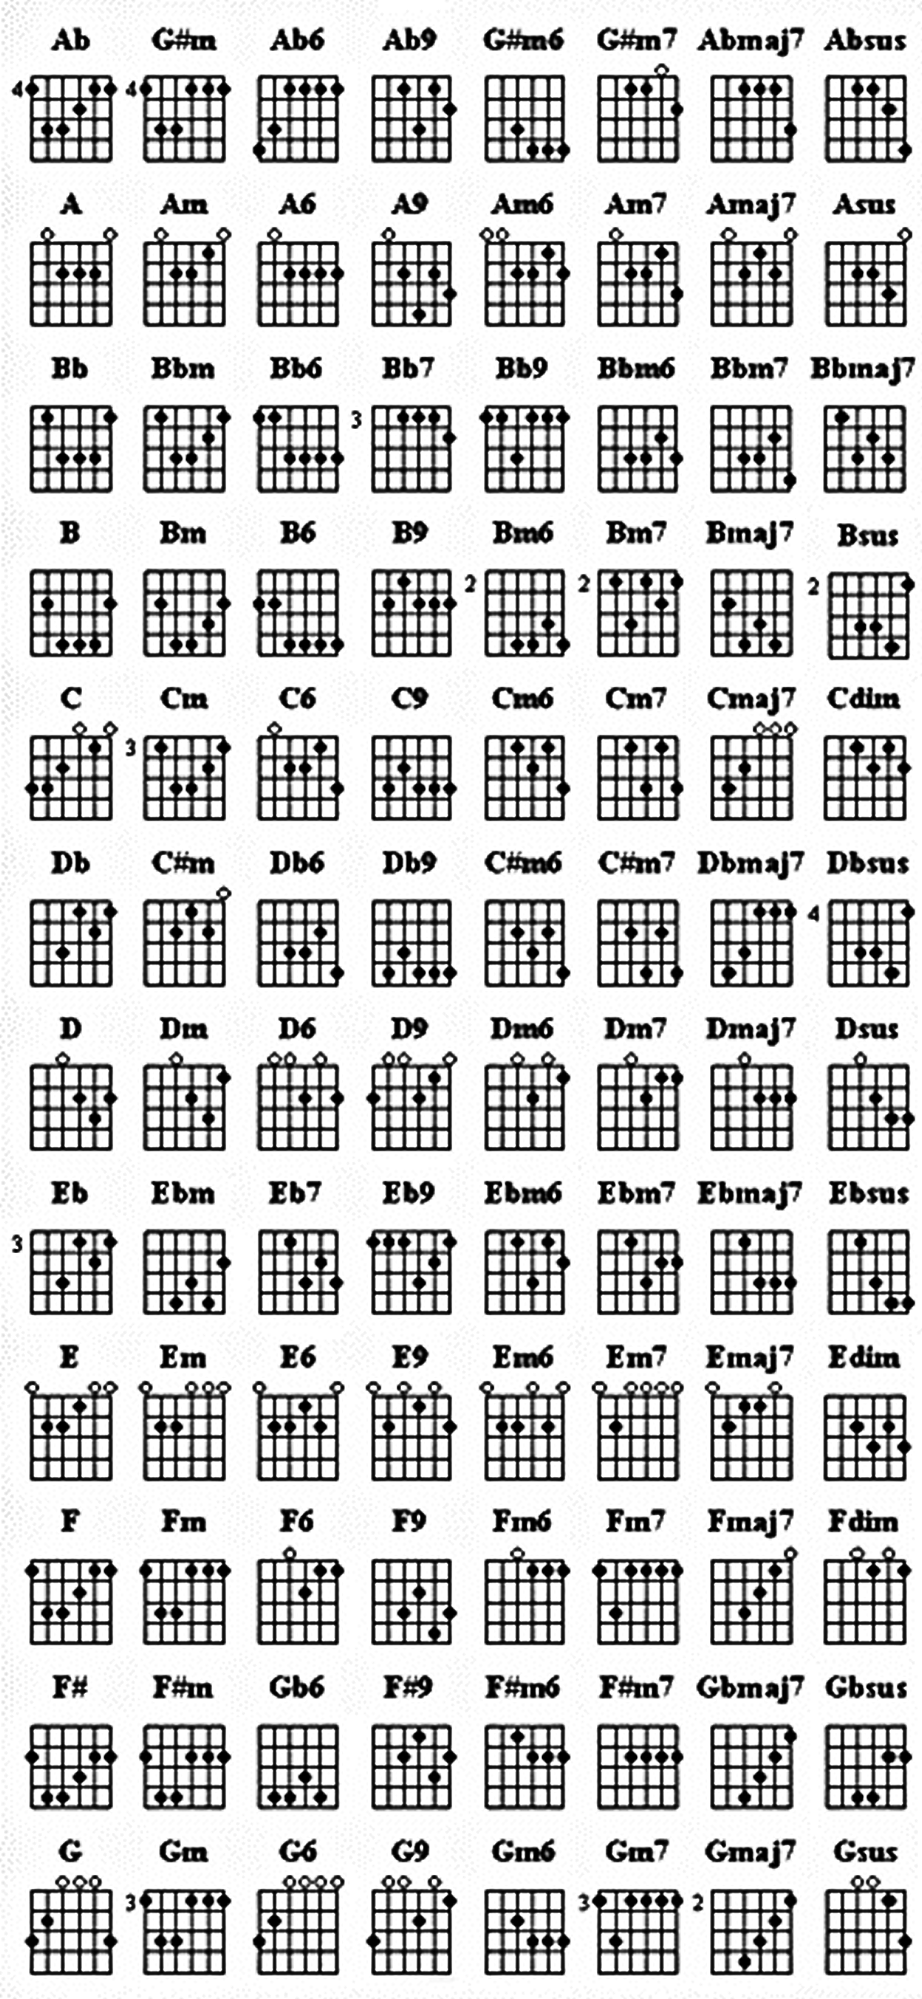 A2 Chord Guitar